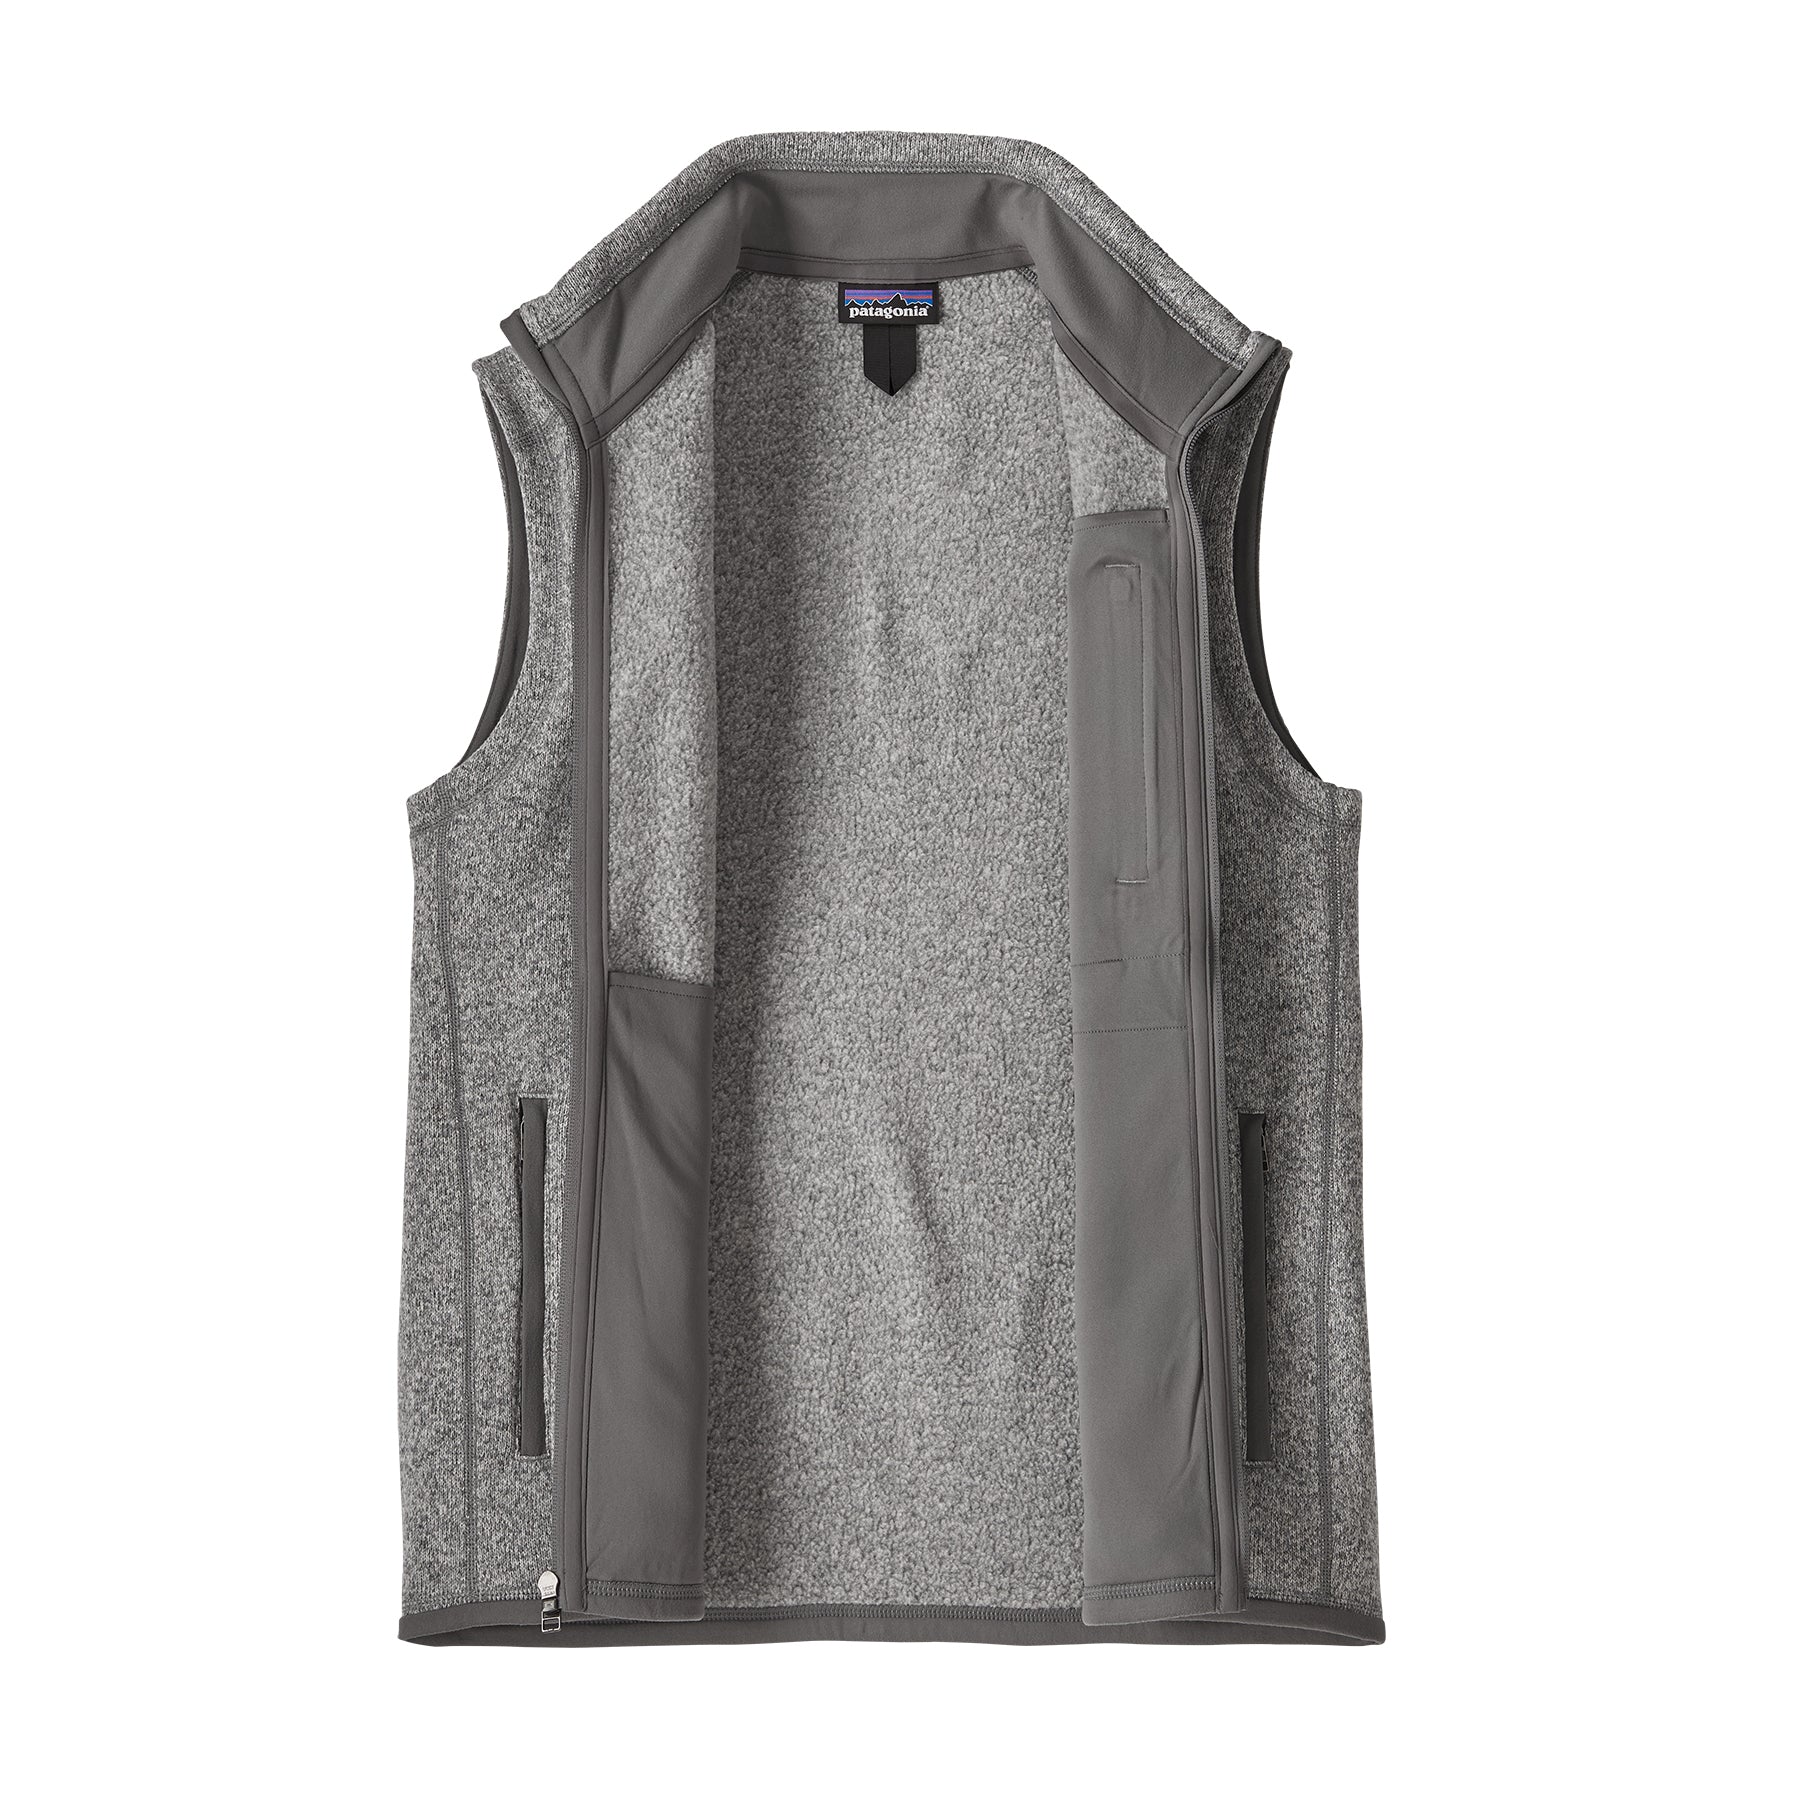 Men's Better Sweater® Fleece Vest